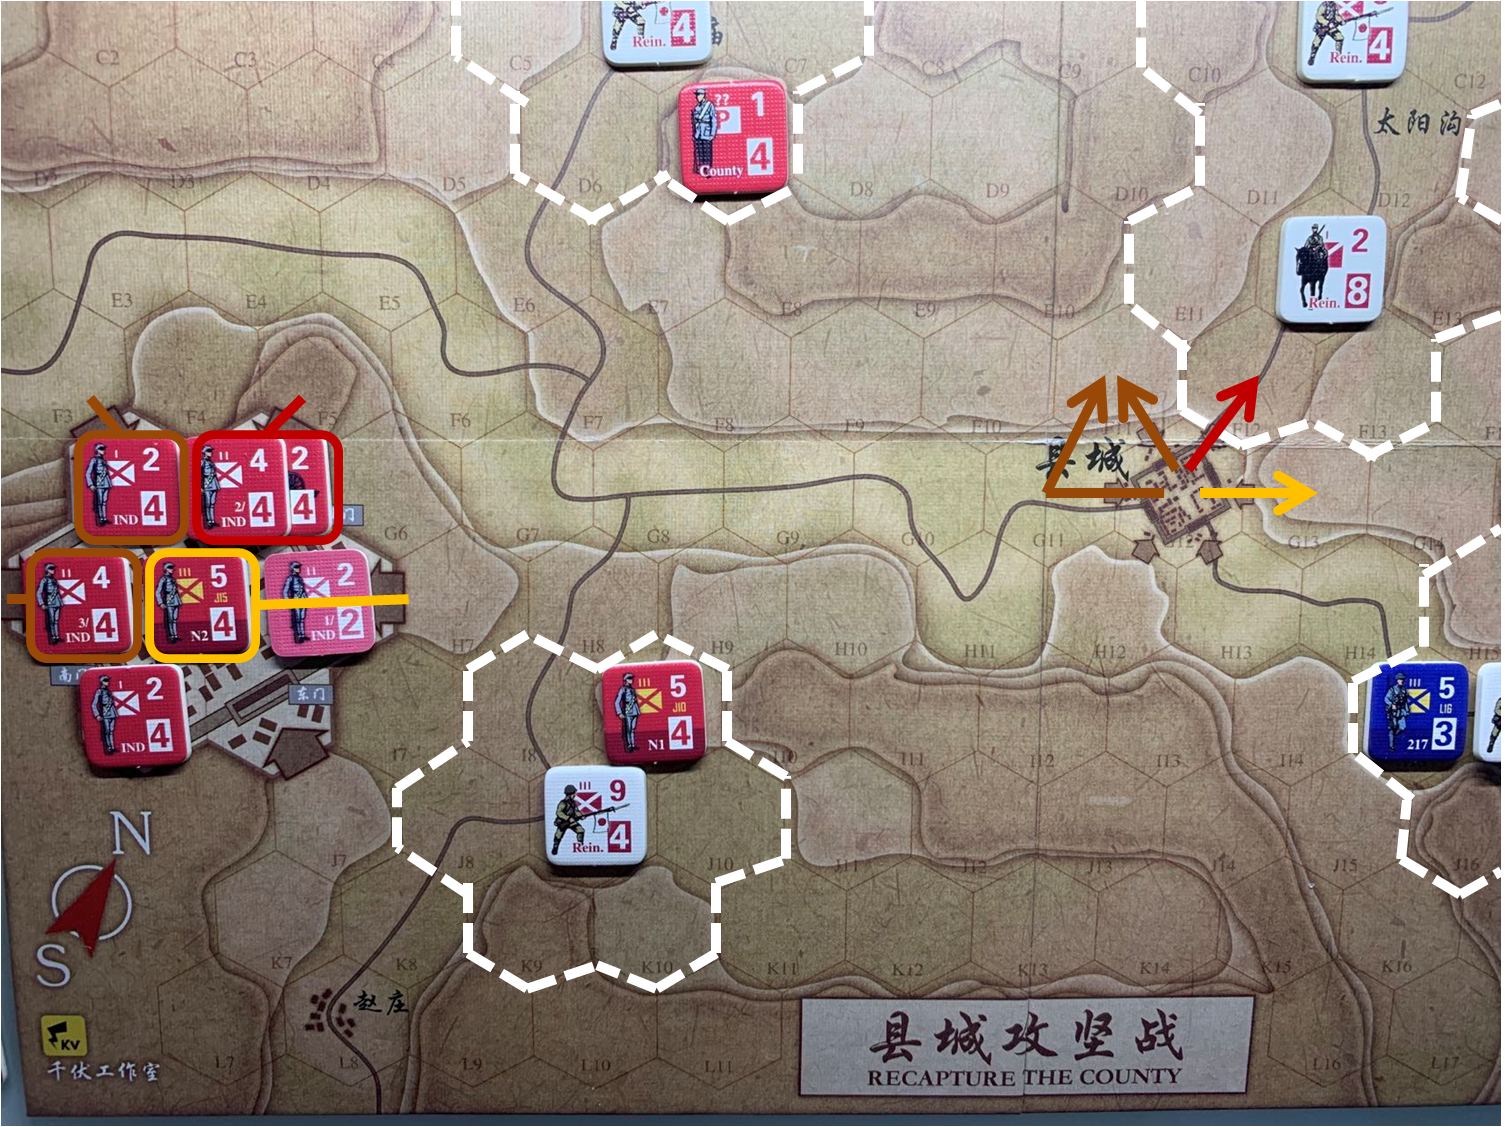 第四回合县城内共军独立团部队和正规军部队N2对于移动命令2、命令3、命令4的执行计划，及所有日军增援部队控制区覆盖范围